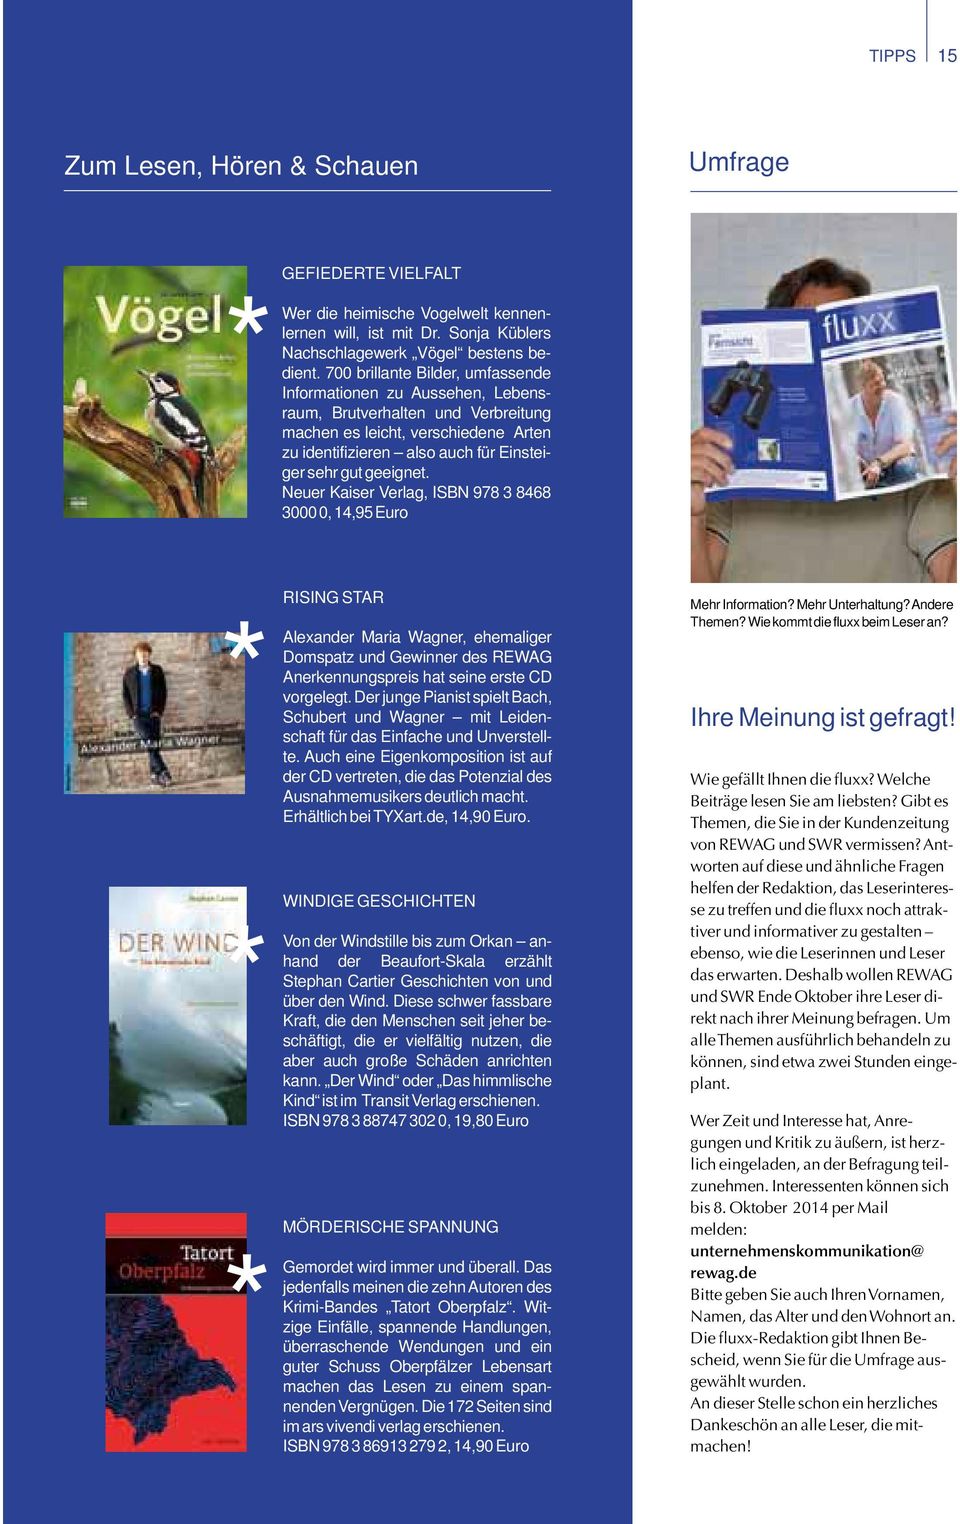 Neuer Kaiser Verlag, ISBN 978 3 8468 3000 0, 14,95 Euro * * * Rising Star Alexander Maria Wagner, ehemaliger Domspatz und Gewinner des REWAG Anerkennungspreis hat seine erste CD vorgelegt.